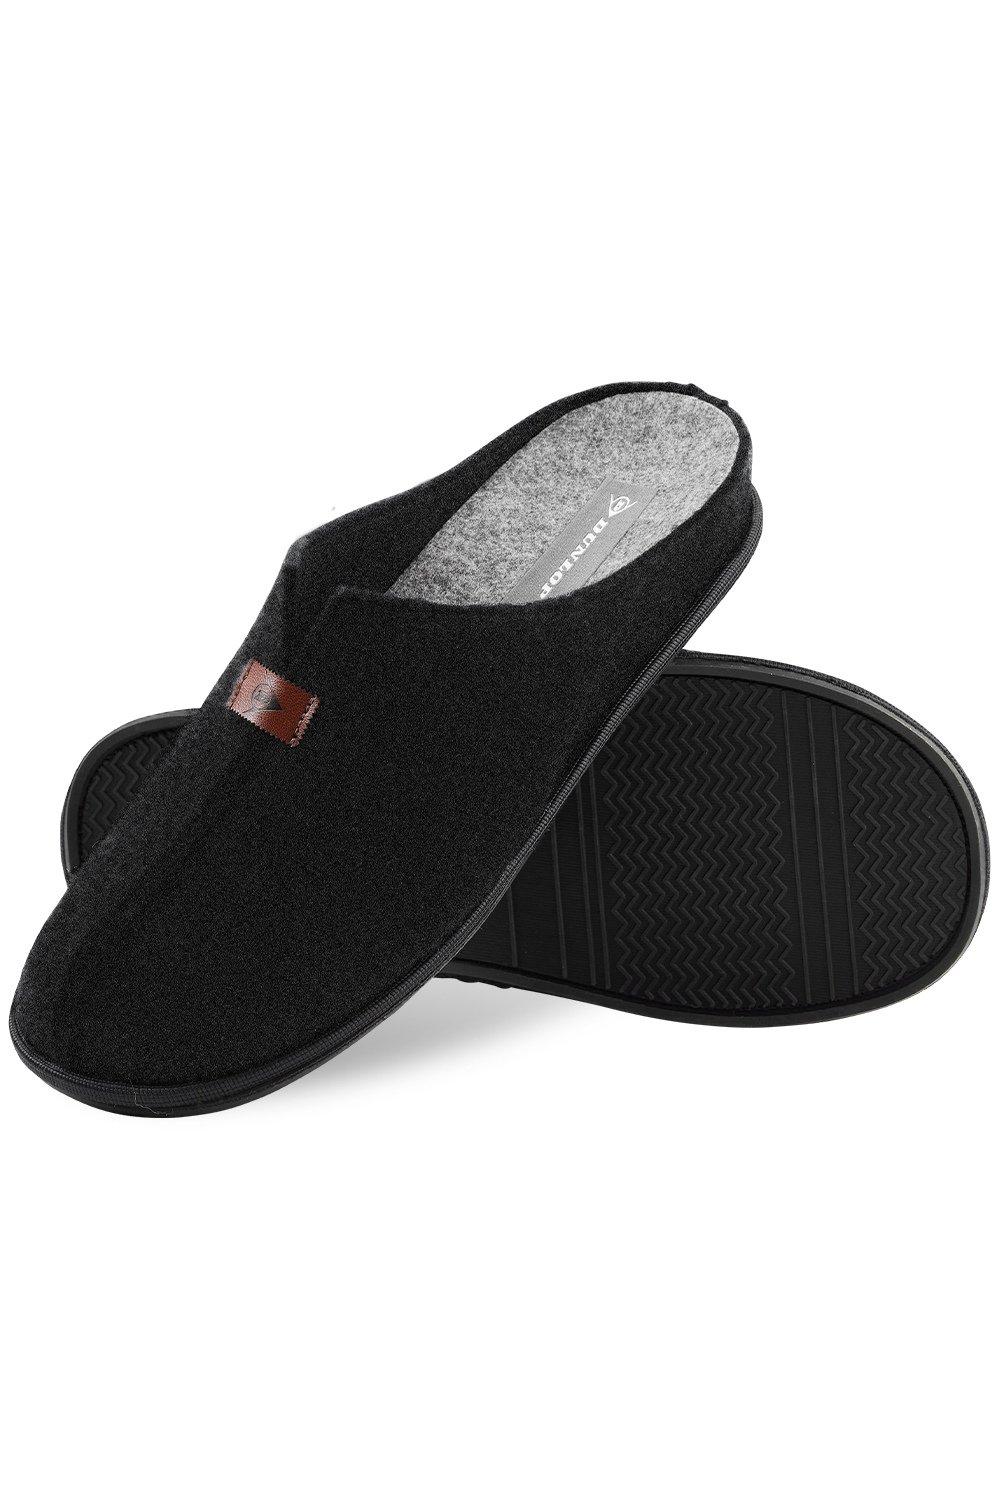 Тапочки с войлочной подкладкой Dunlop, черный тапочки с пуговицами в клетку dunlop серый